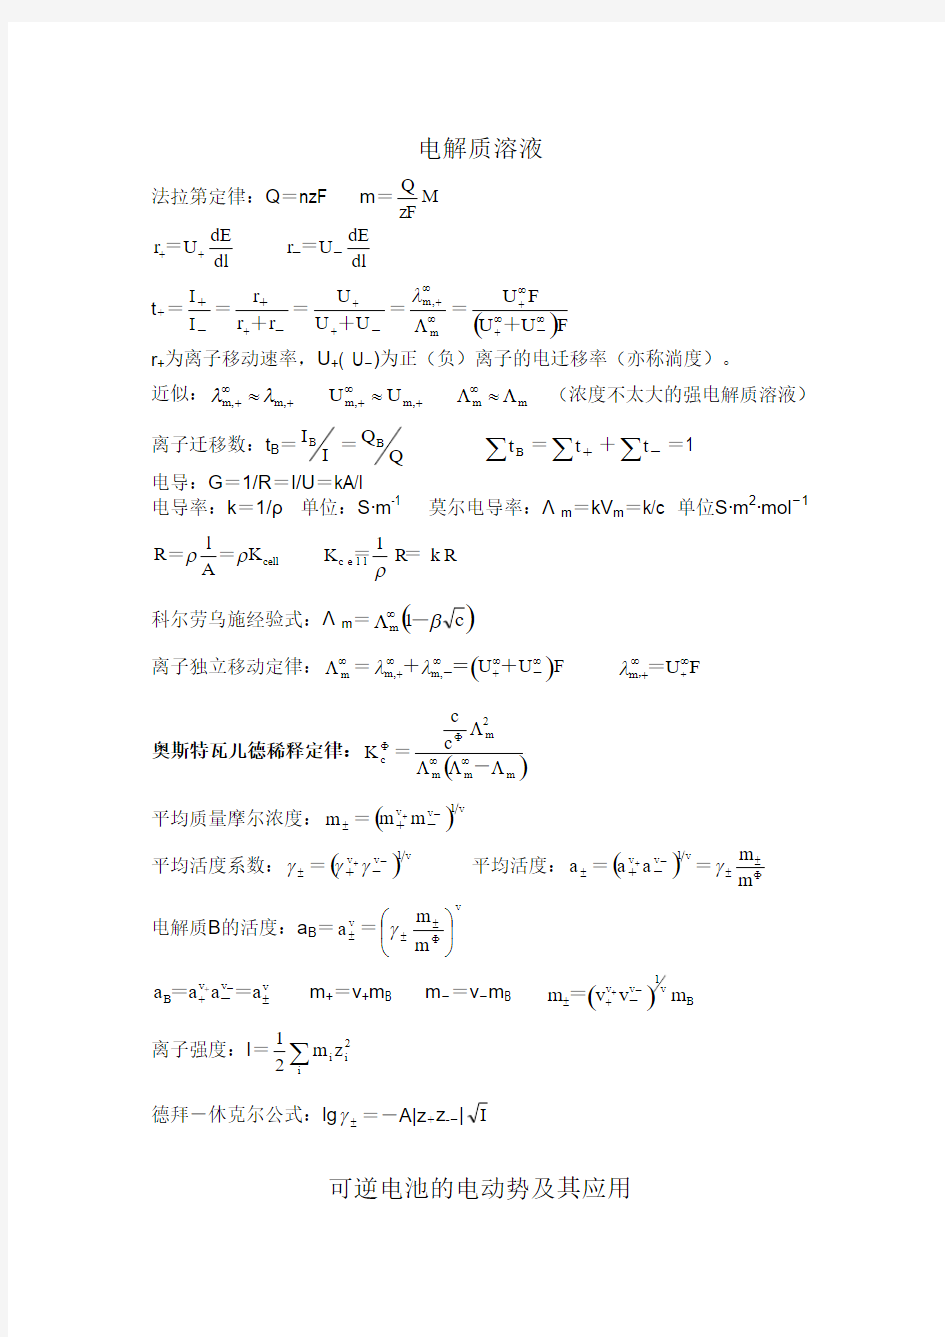 大学物理化学公式集(傅献彩_南京大学第五版) 下册